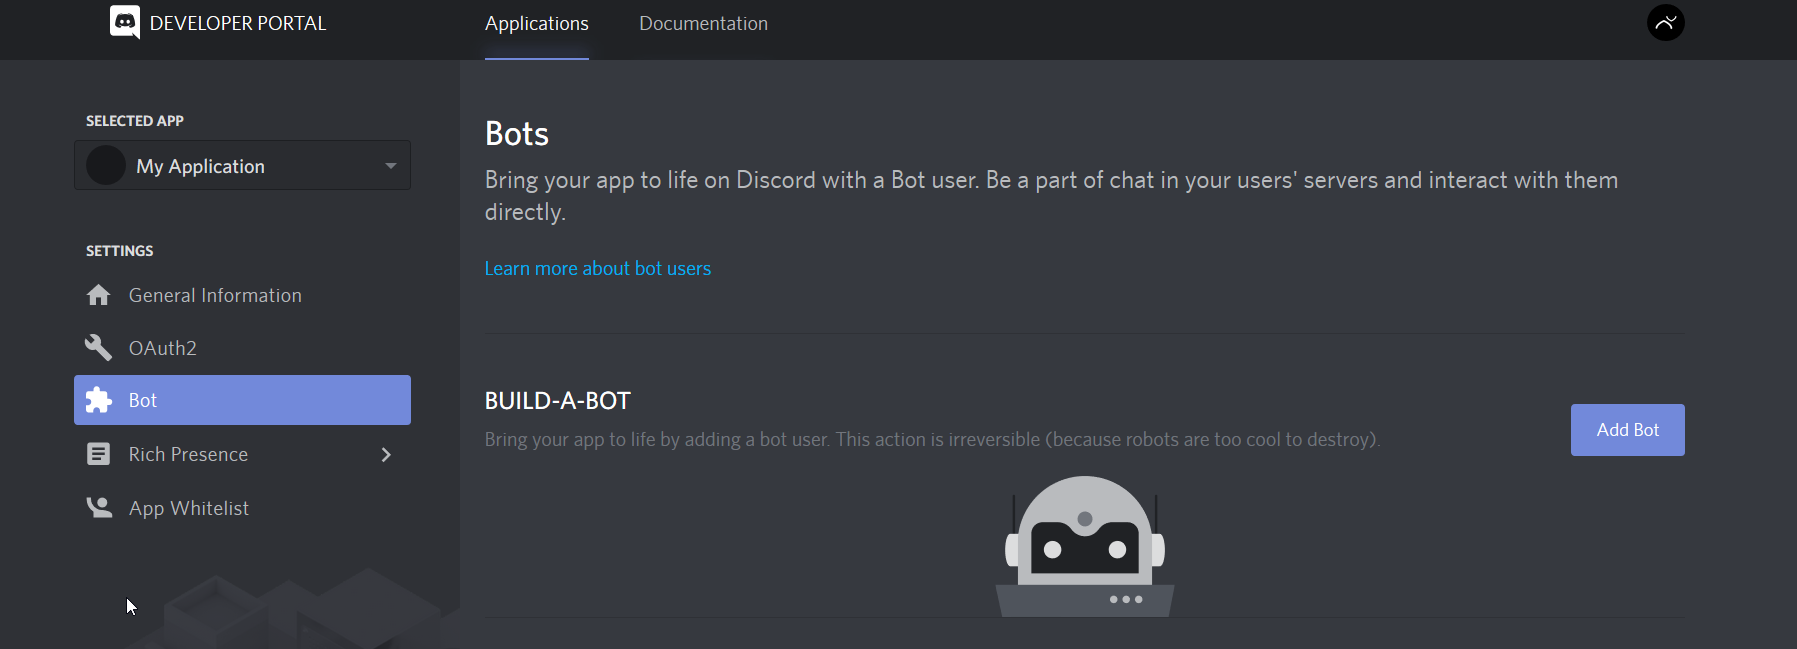 Discord Bot Builder Crack - roblox chat hack v10 script